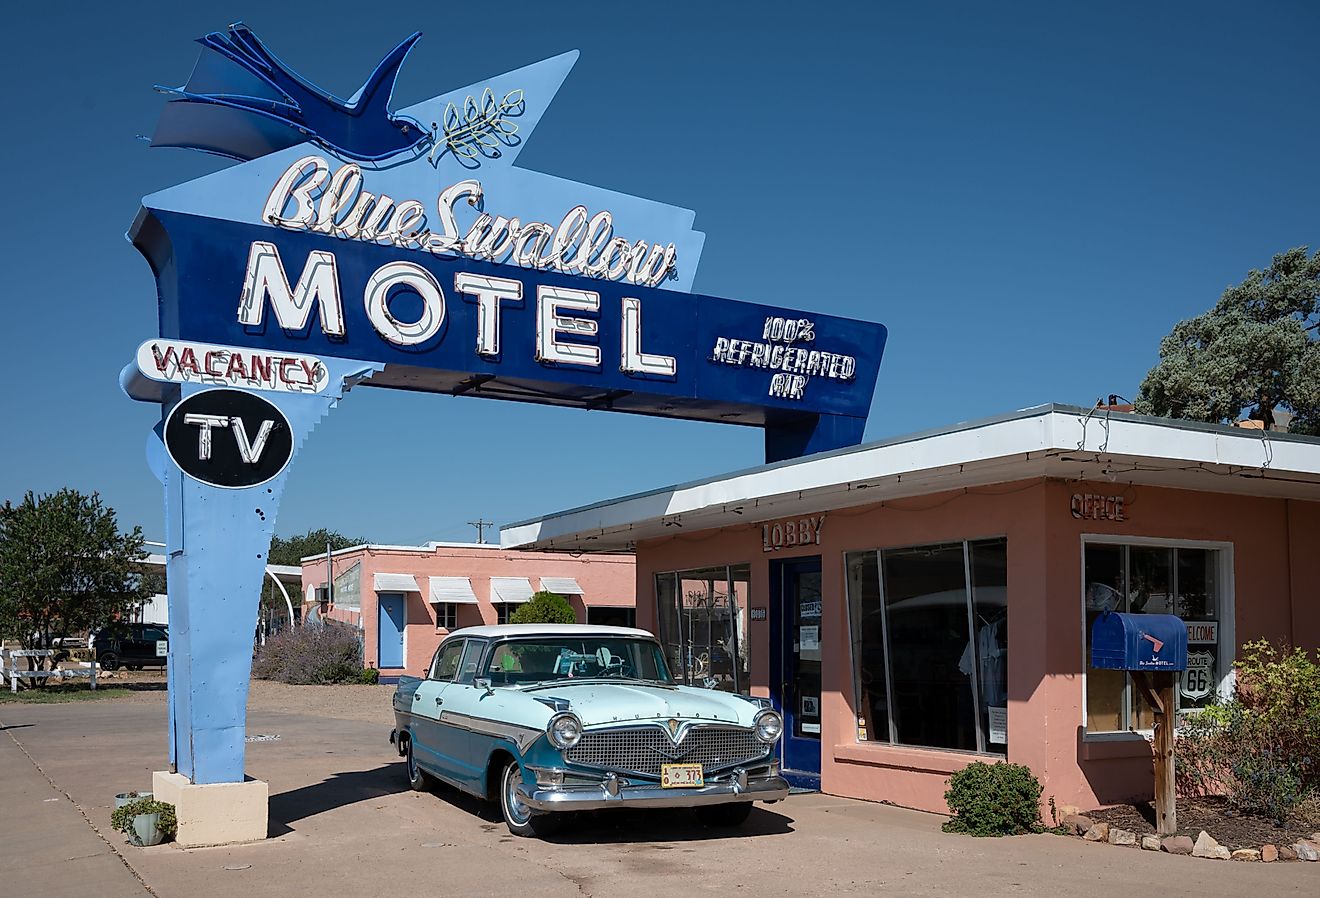 Classic Blue Swallow motel on historic Route 66, Tucumcari, New Mexico. Image credit adolf martinez soler via Shutterstock